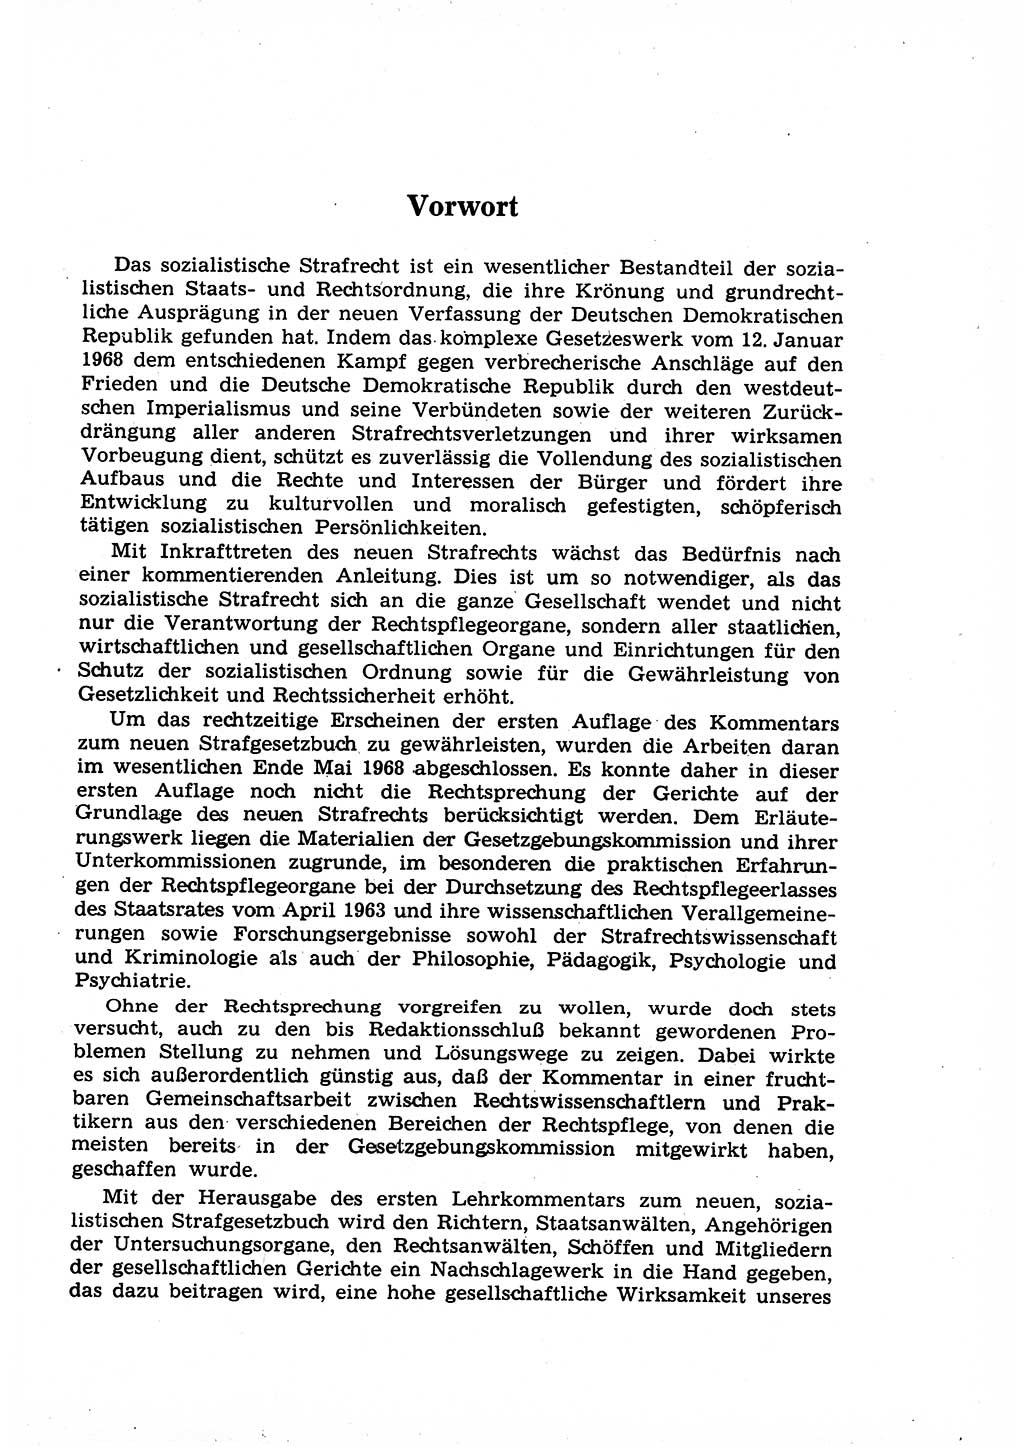 Strafrecht der Deutschen Demokratischen Republik (DDR), Lehrkommentar zum Strafgesetzbuch (StGB), Allgemeiner Teil 1969, Seite 5 (Strafr. DDR Lehrkomm. StGB AT 1969, S. 5)